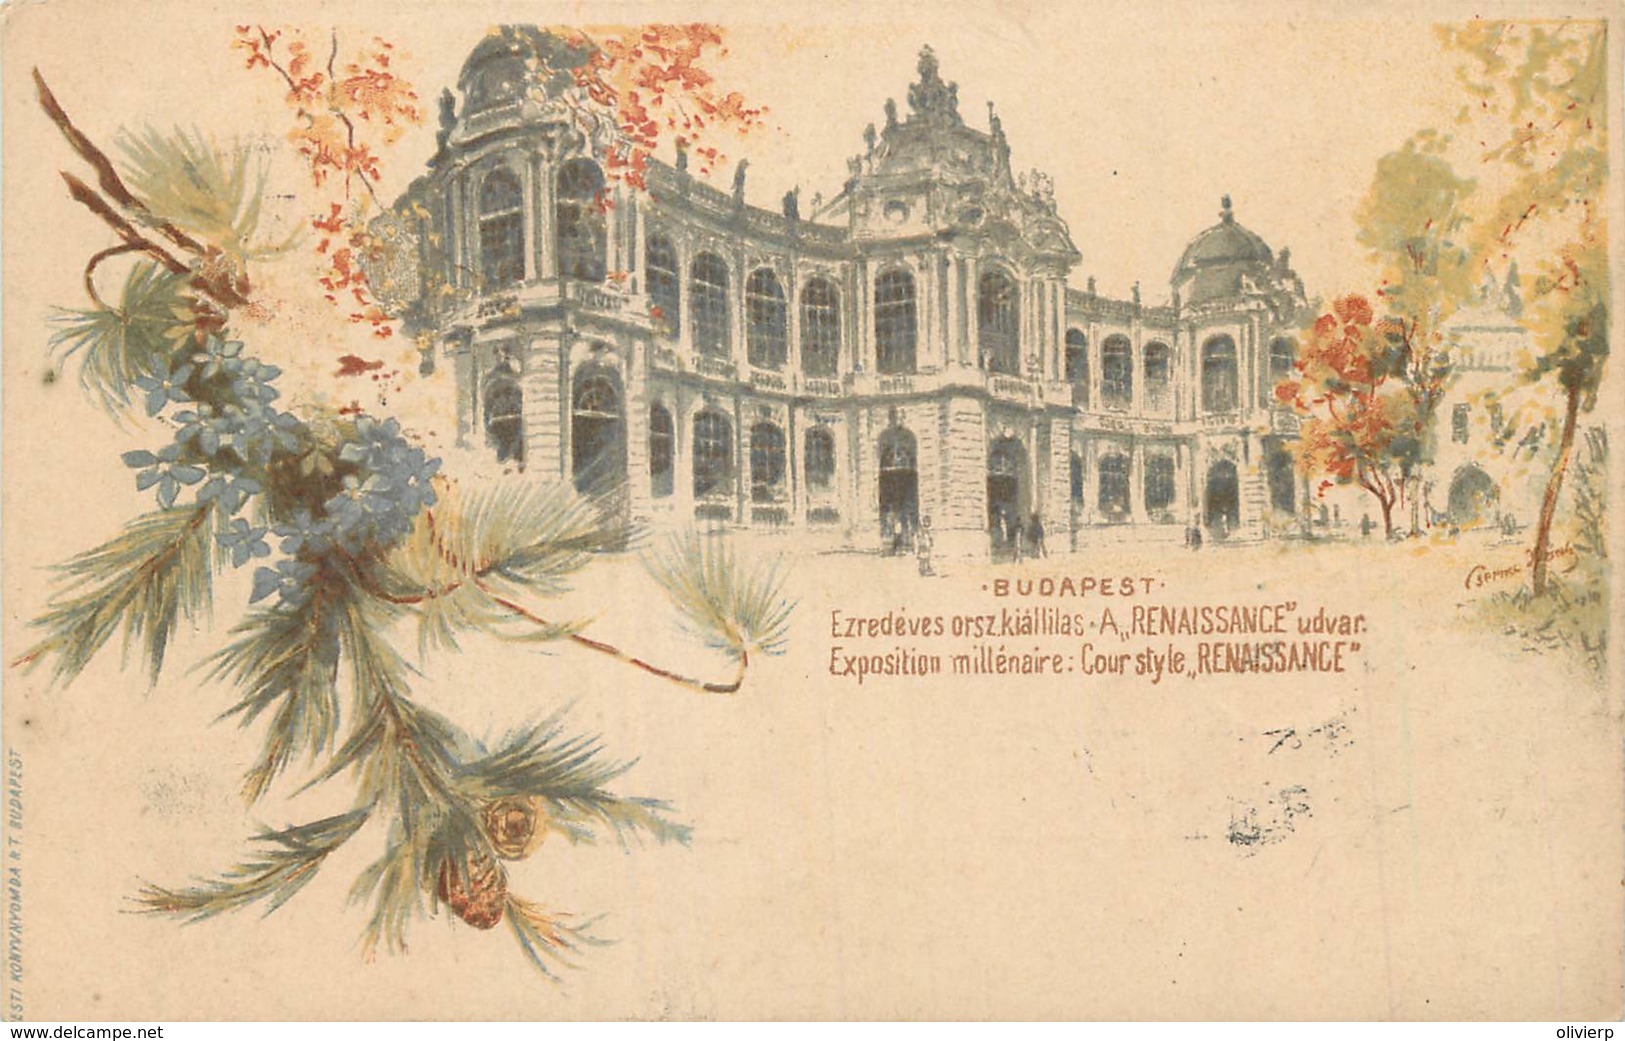 Hongrie - Type Gruss Aus - Budapest - Exposition Millénaire - Cour Style Renaissance - Hongrie